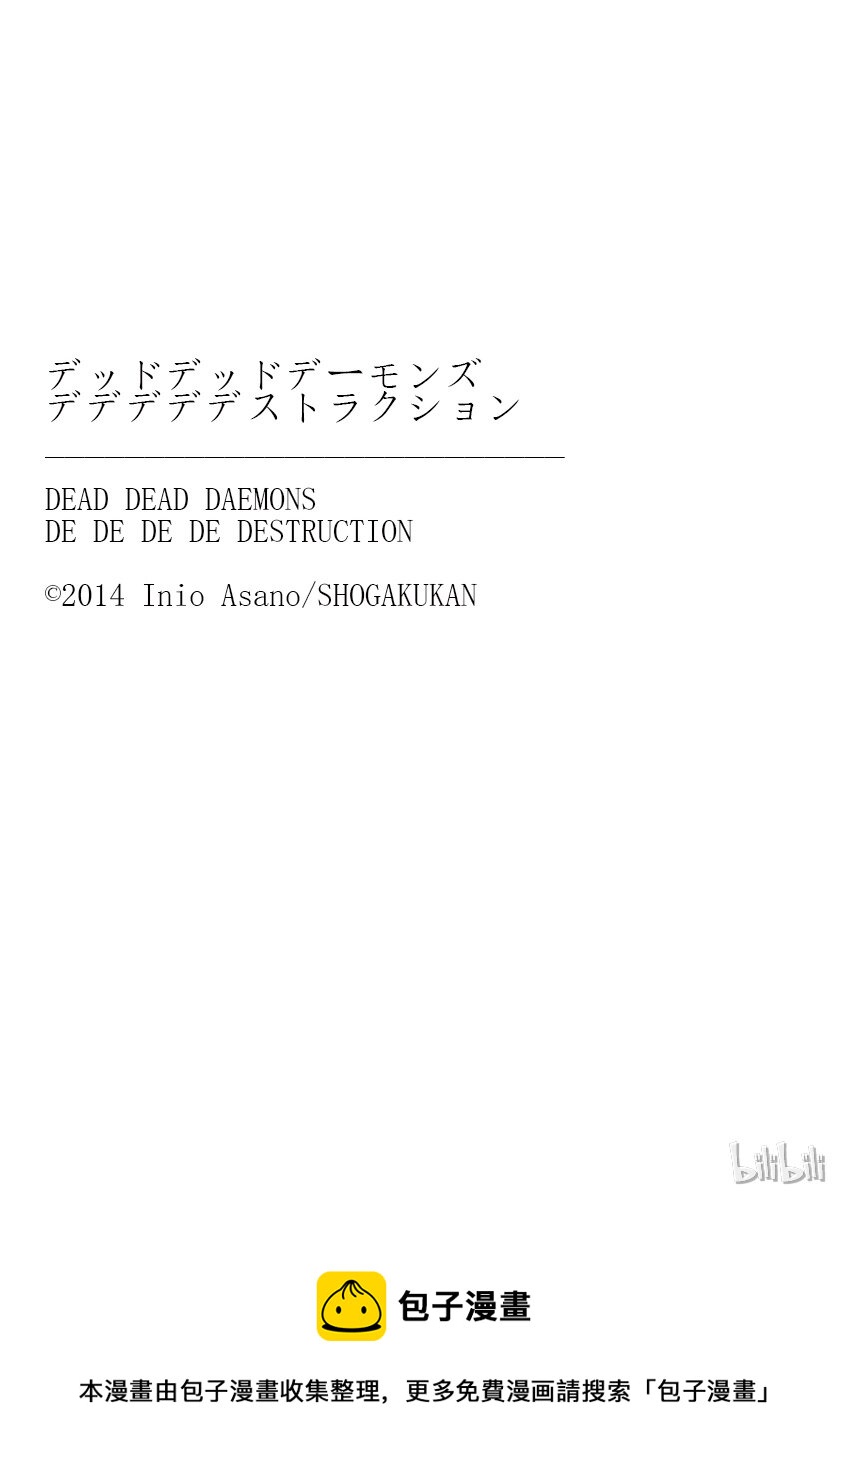 惡魔的破壞 DEAD DEAD DEMON'S DEDEDEDE DESTRUCTION - 004 - 3